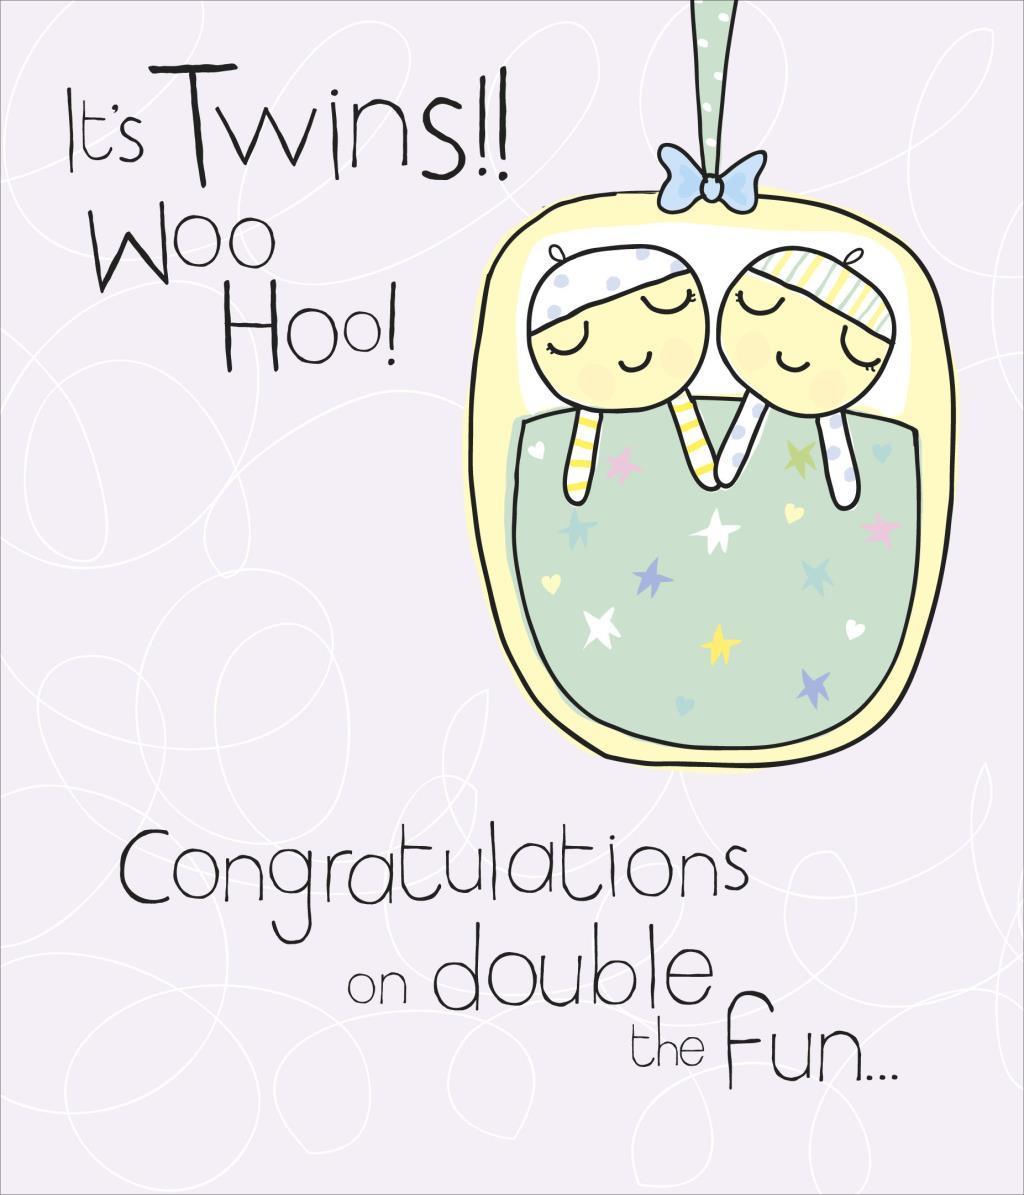 congratulation baby twins